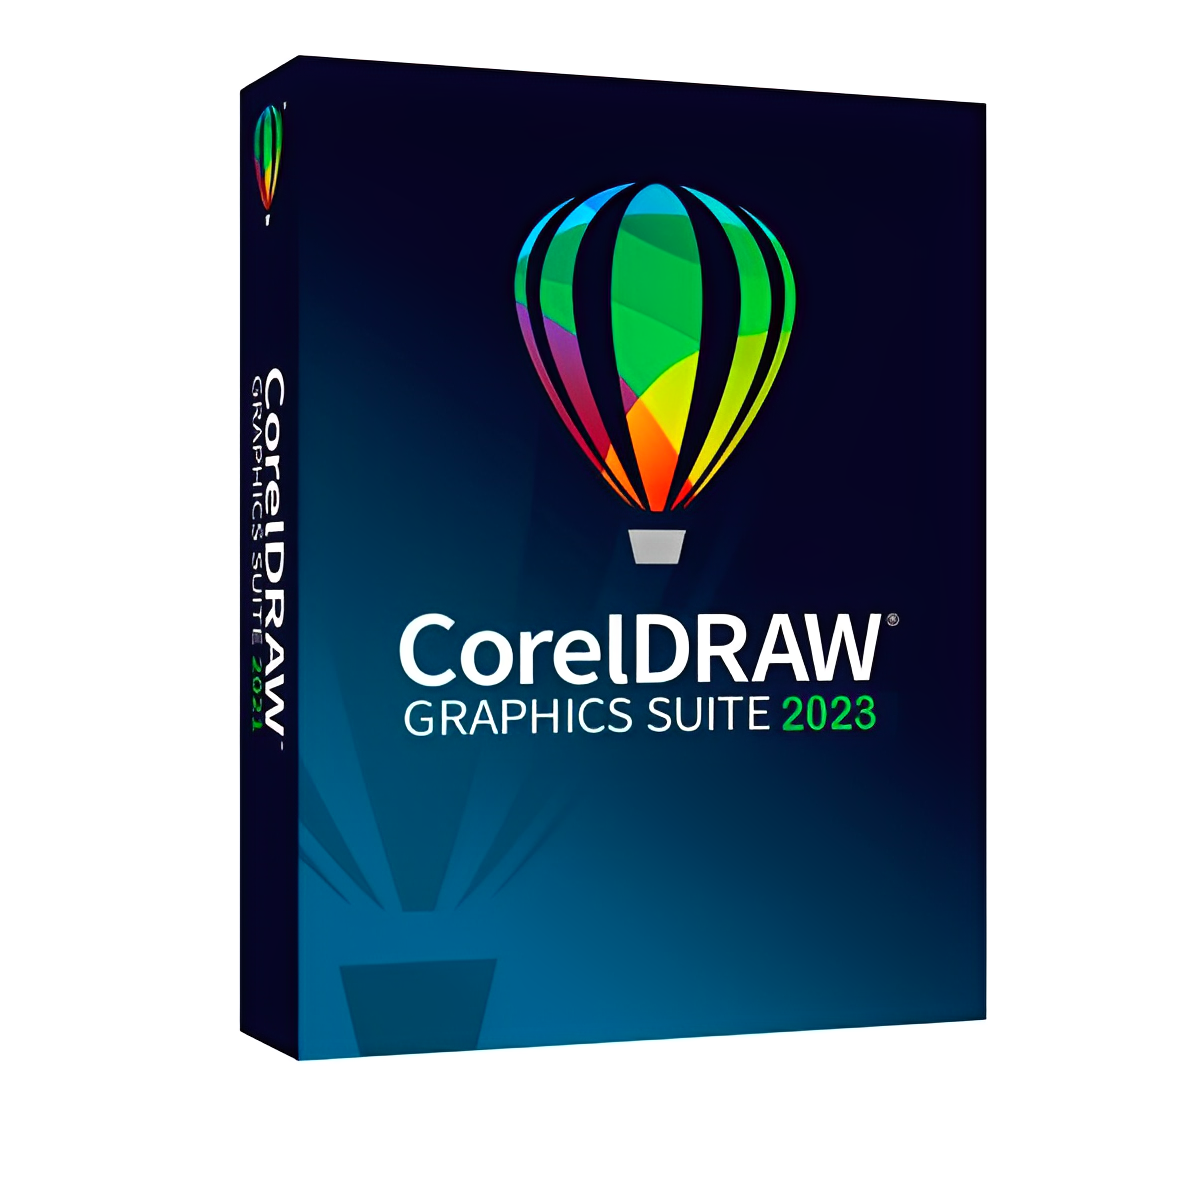 coreldraw graphics suite 2023 download